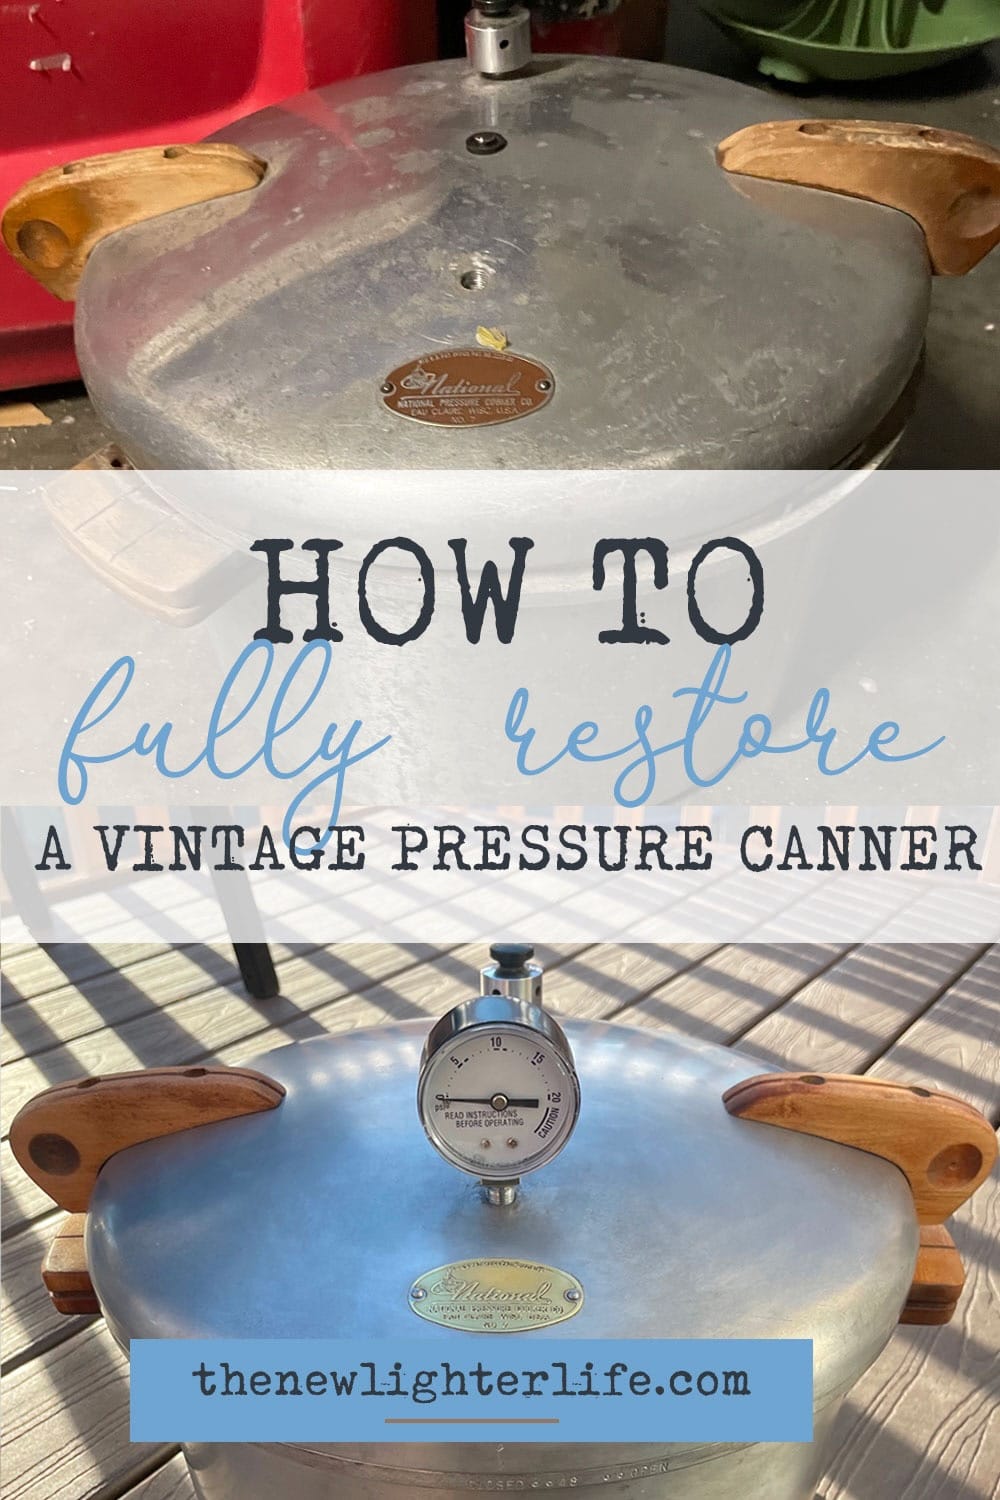 https://thenewlighterlife.com/wp-content/uploads/2023/04/Vintage-Pressure-Canner-Restore-Pinterest.jpeg